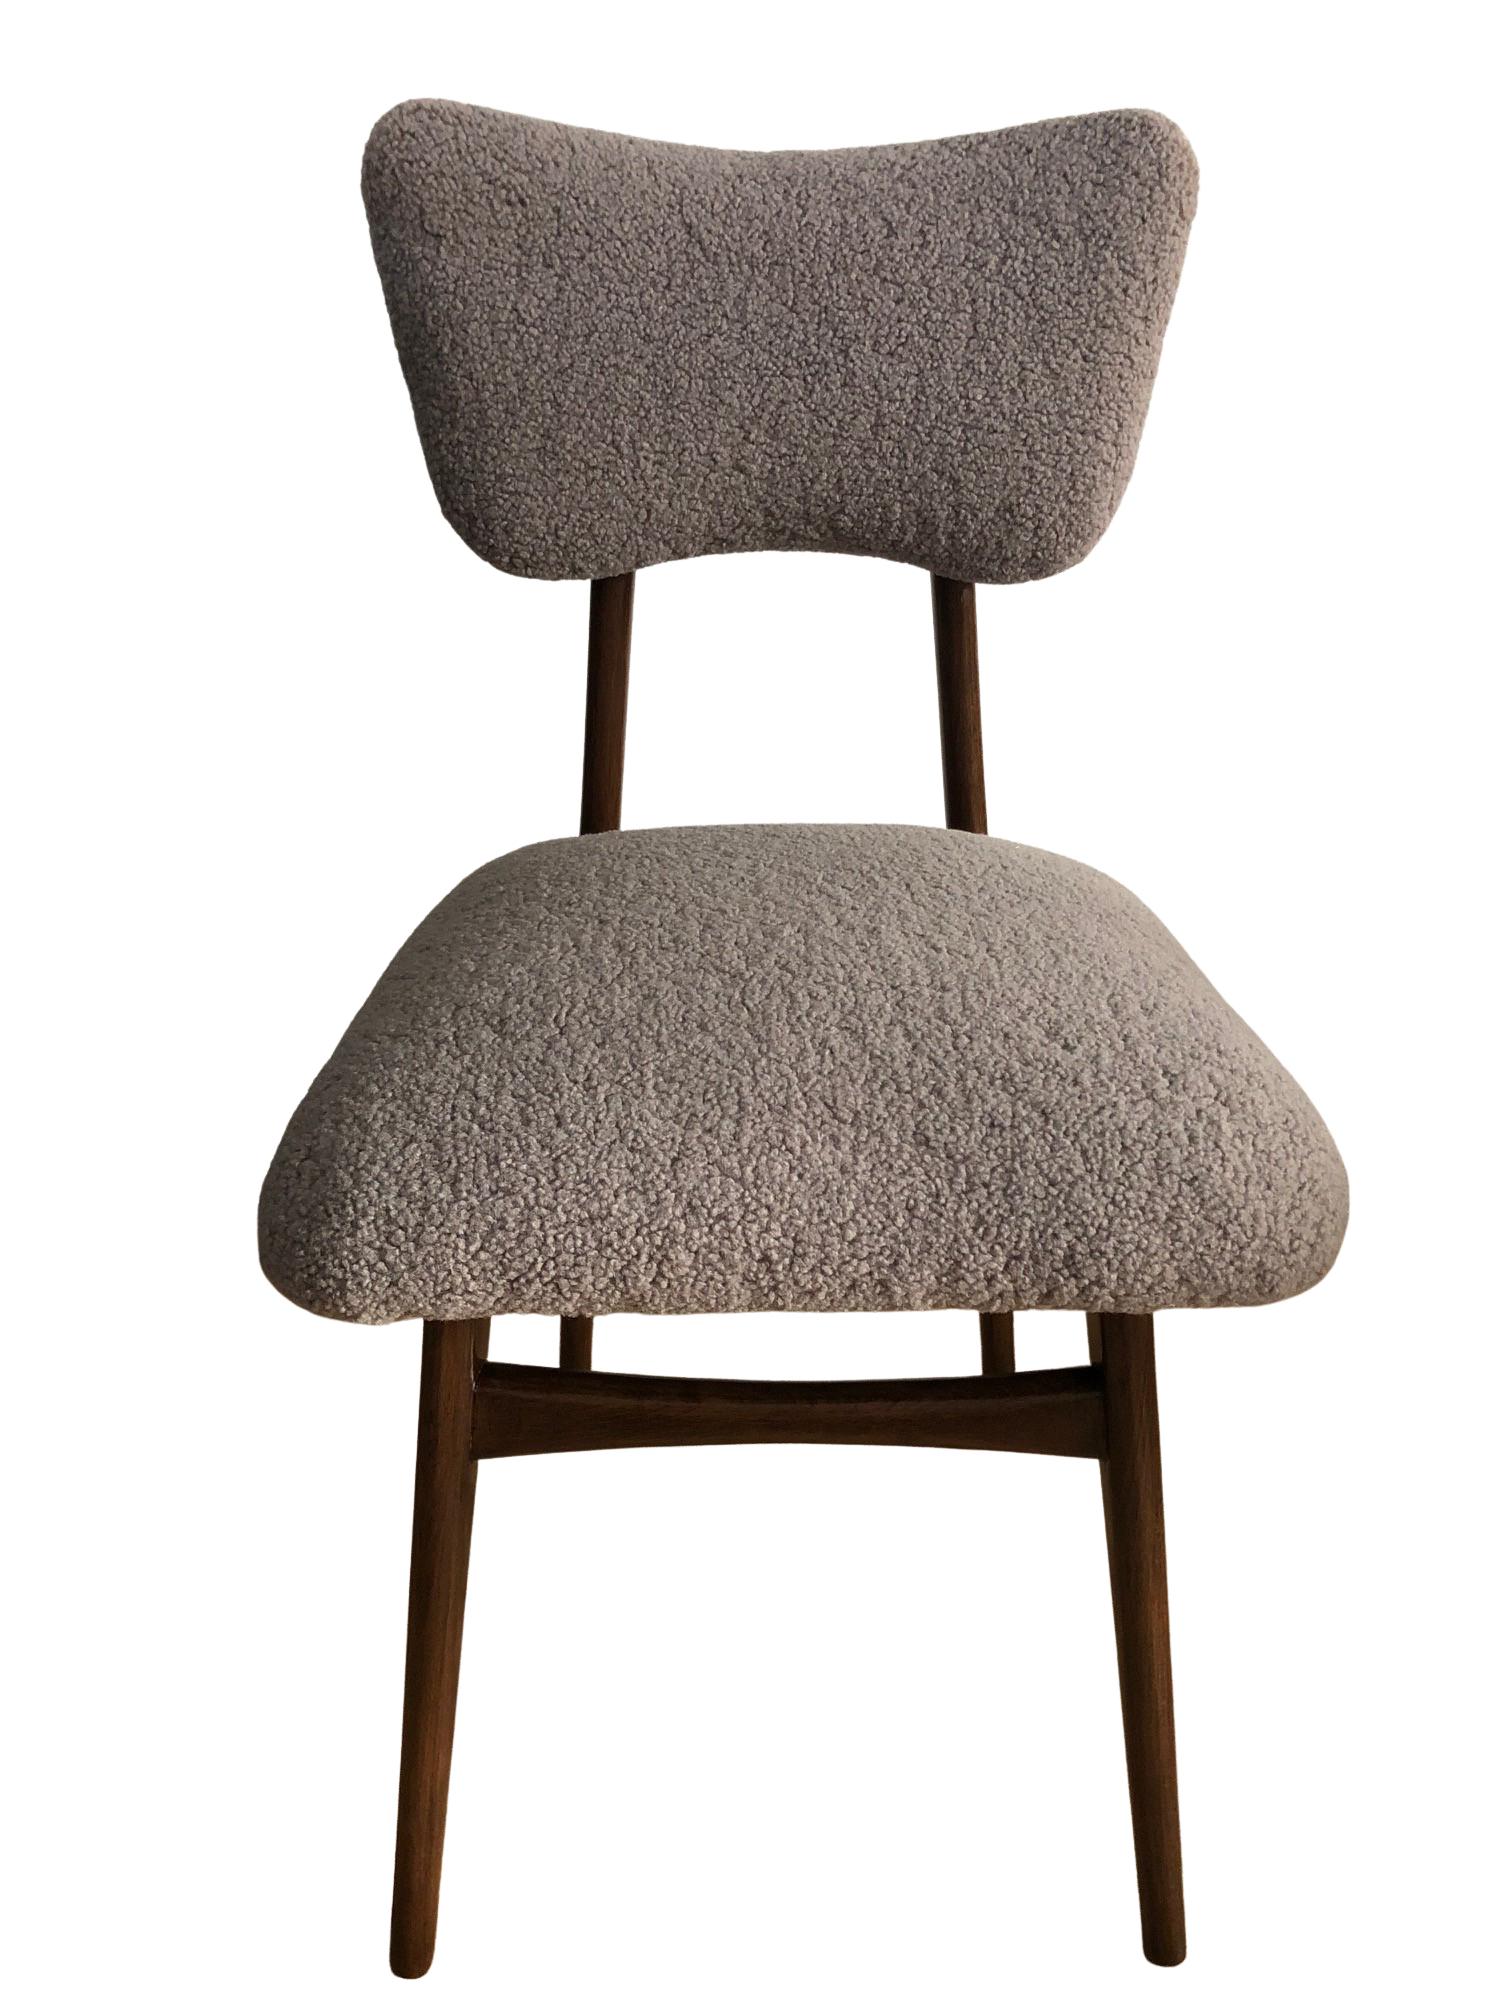 Ensemble unique de six chaises fabriquées en Pologne dans les années 1960, conçues par Rajmund Halas. 

Le rembourrage est en textile bouclé agréable au toucher. Il s'agit d'un tissu italien de haute qualité et durable dans une couleur taupe chaude